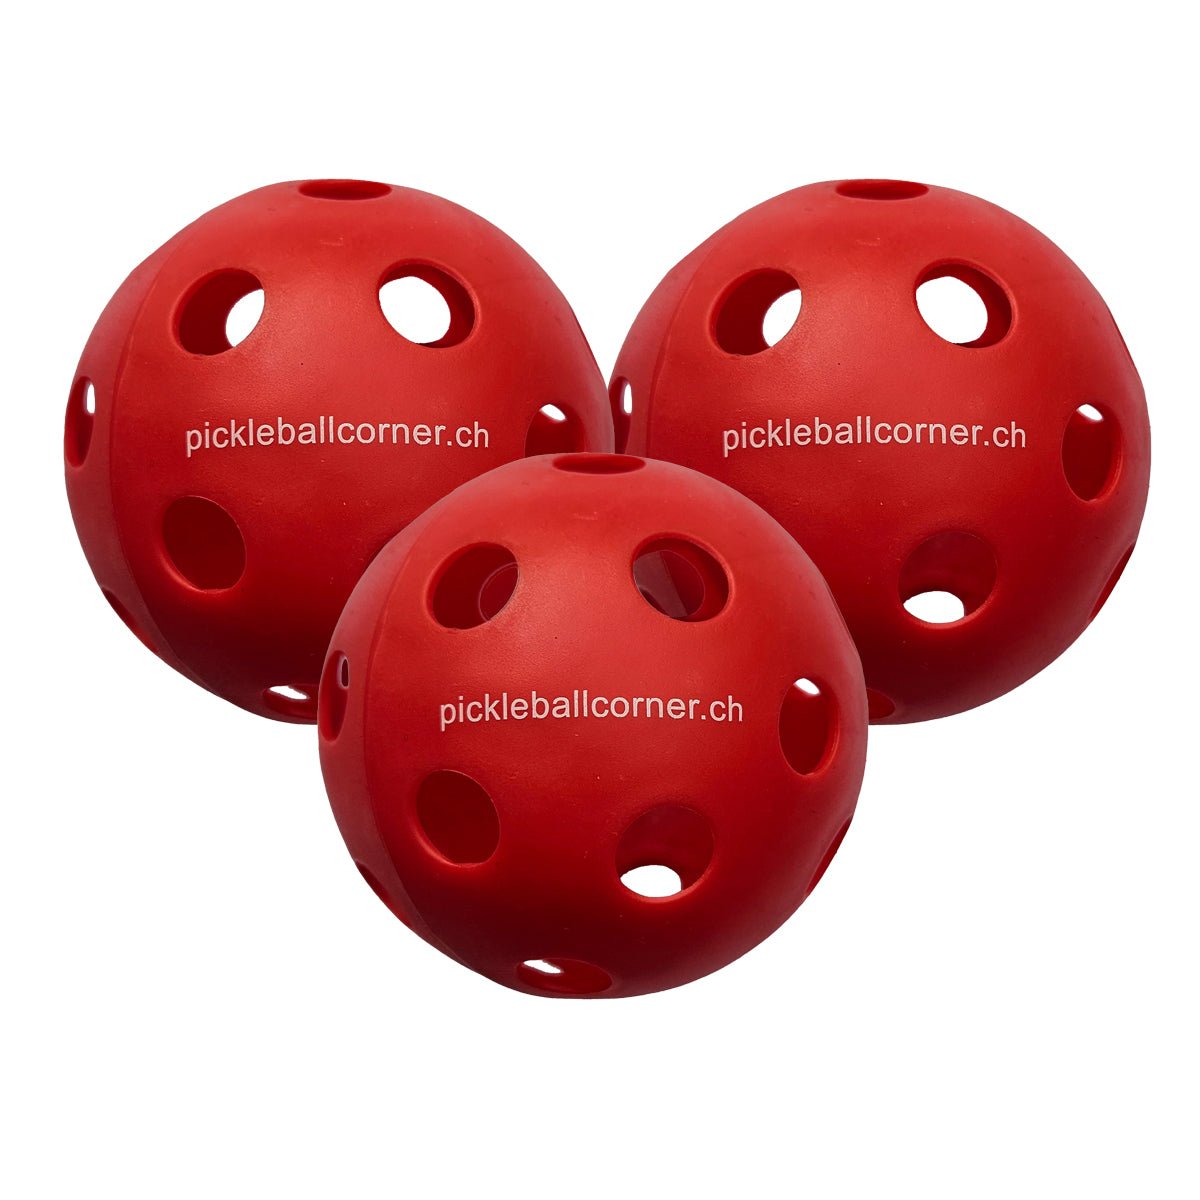 Pickleball Corner PC-1 Indoor Pickleball Ball Rot - Pickleball Corner Schweiz - Bälle